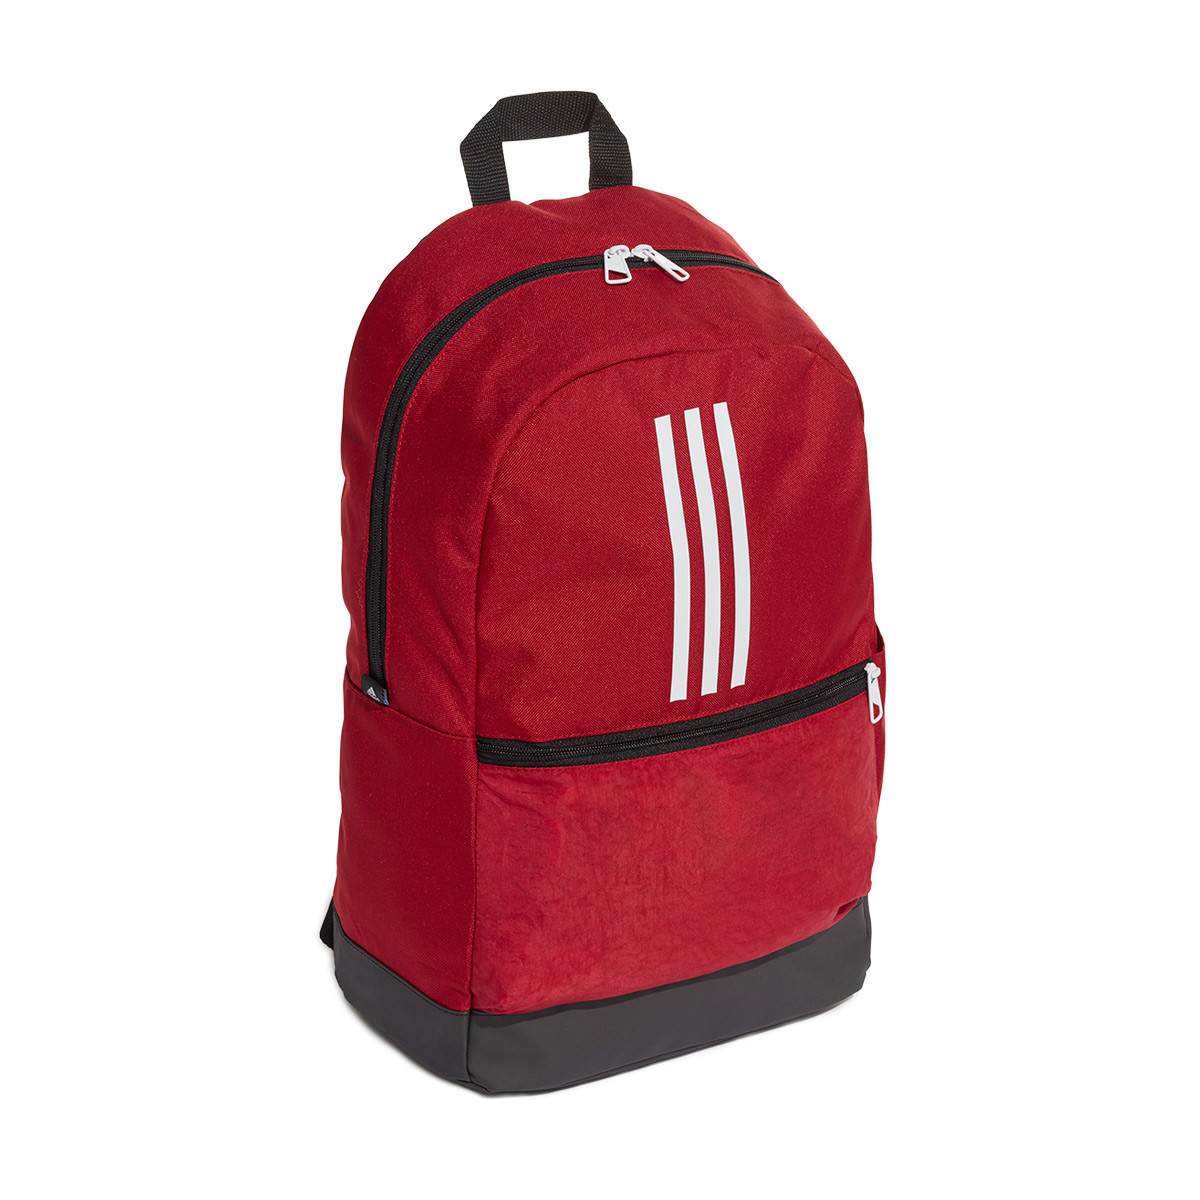 adidas backpack maroon